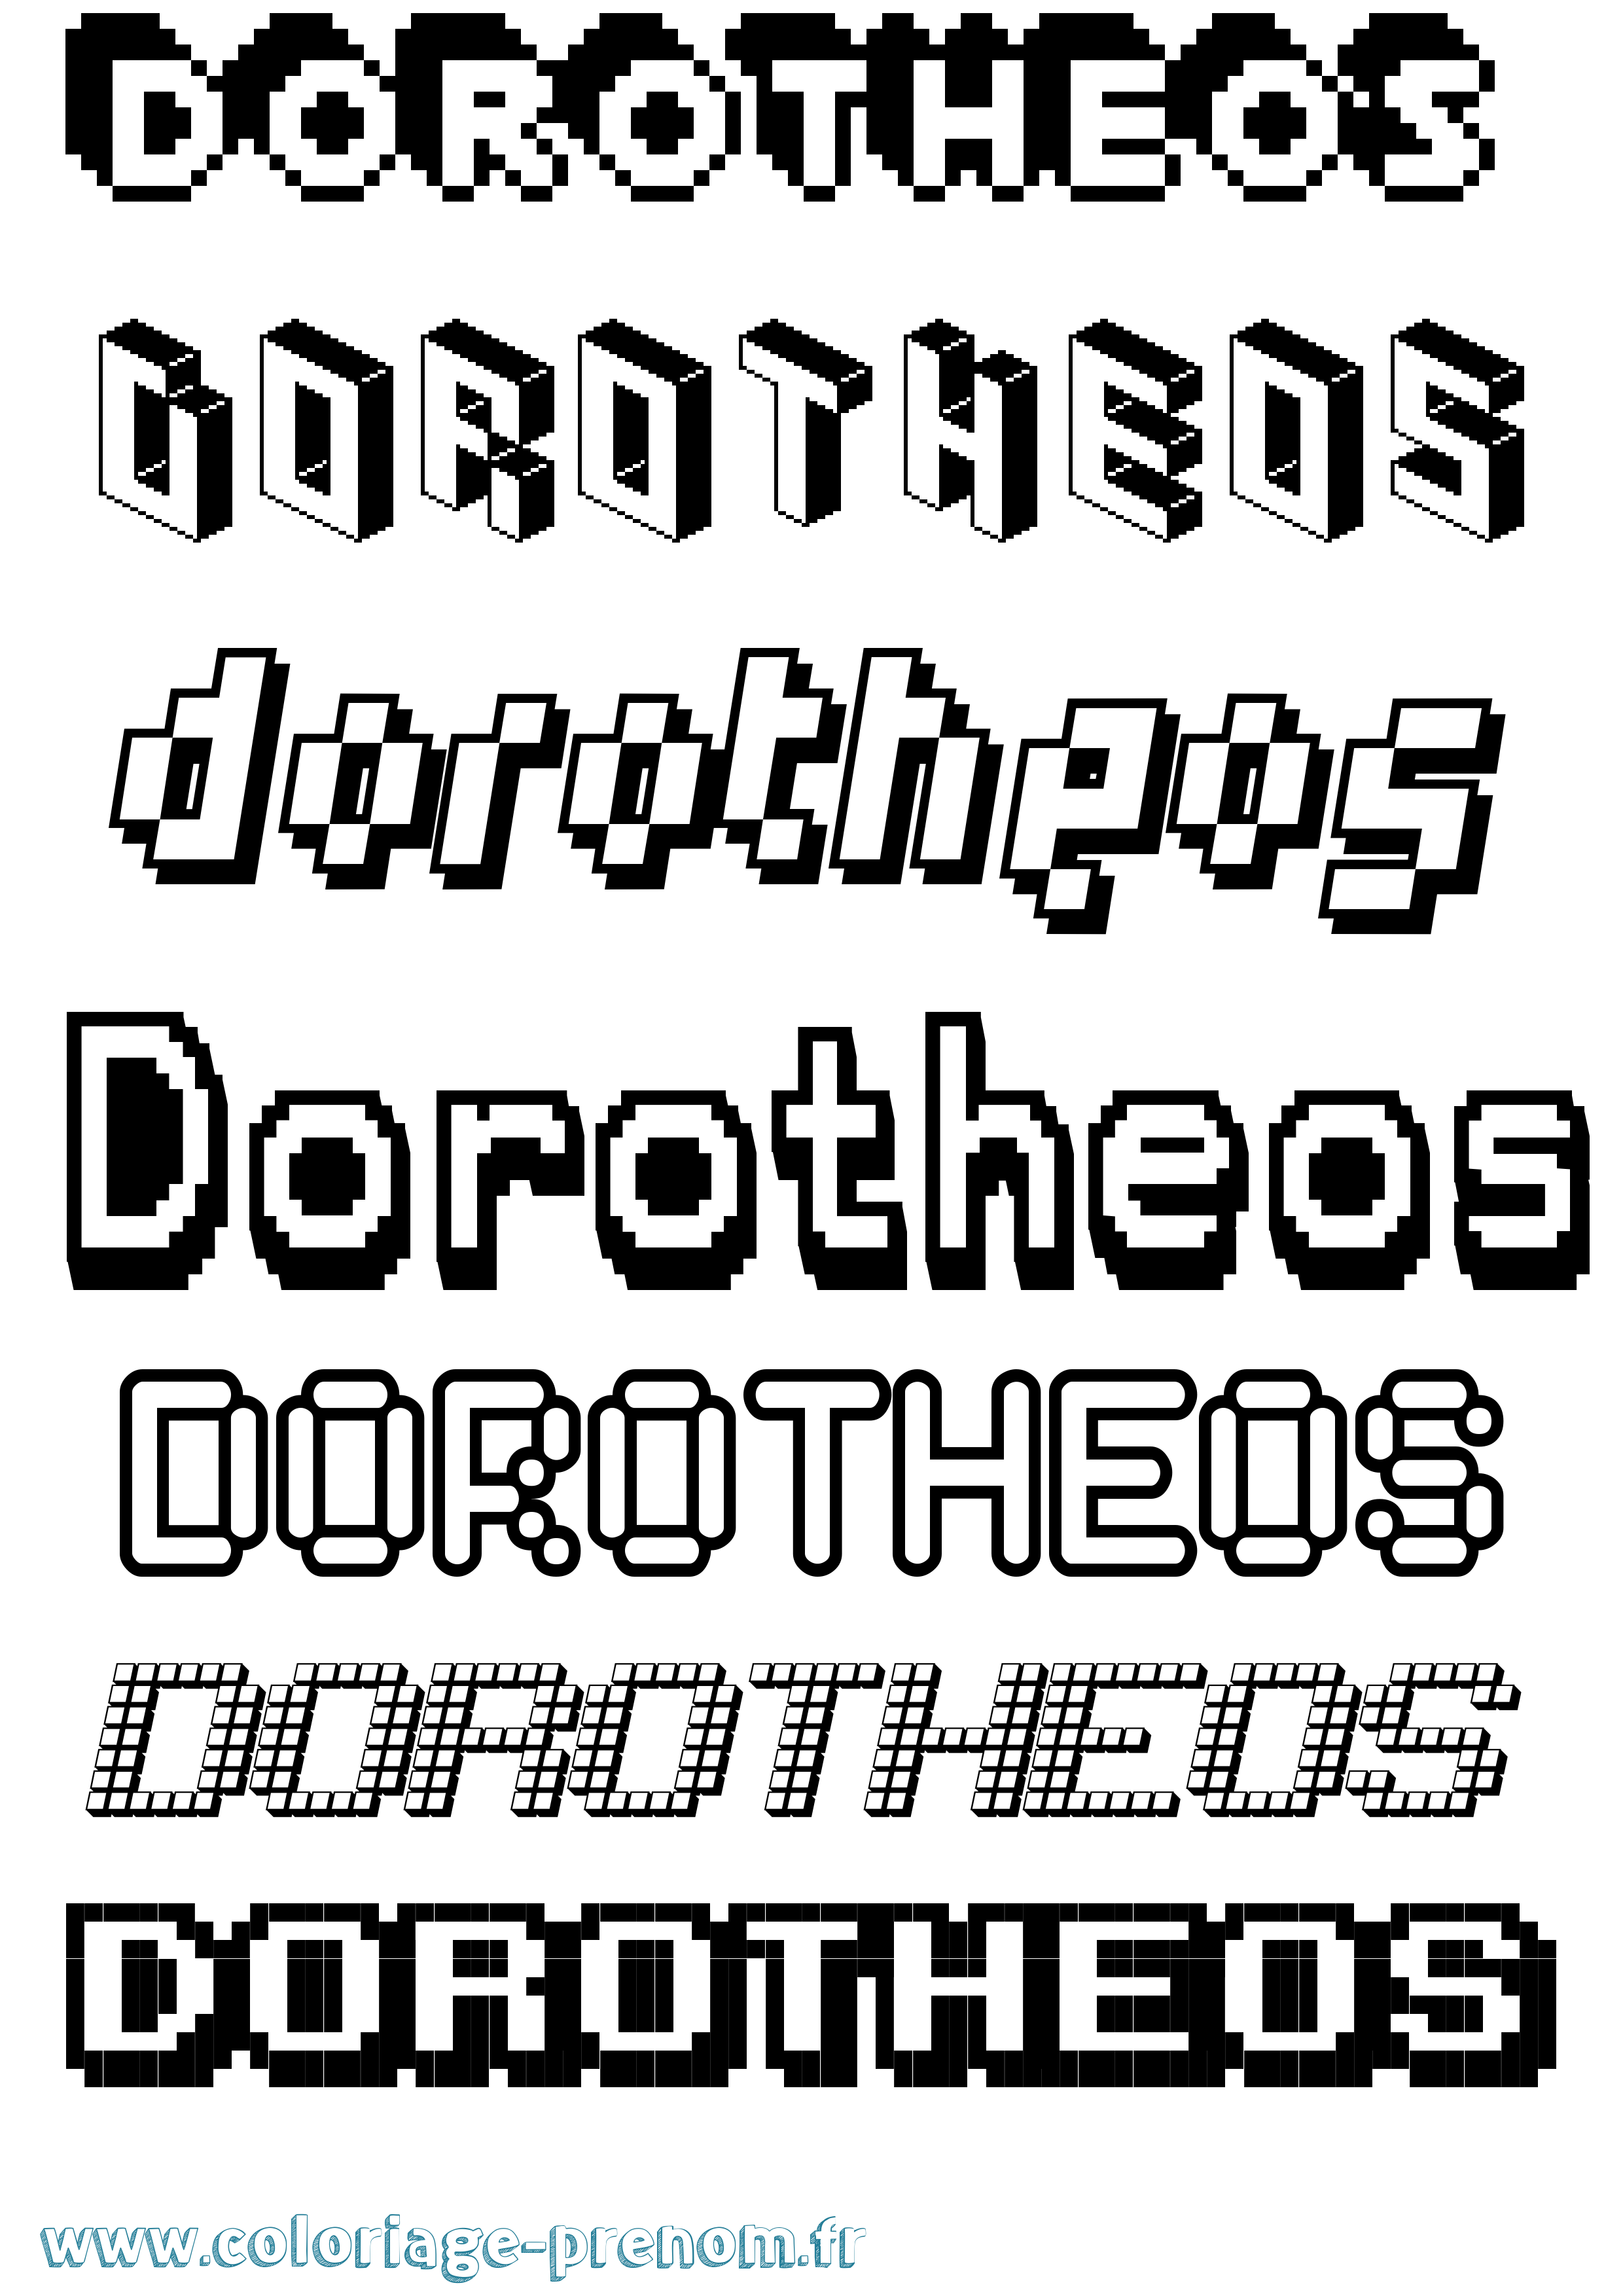 Coloriage prénom Dorotheos Pixel